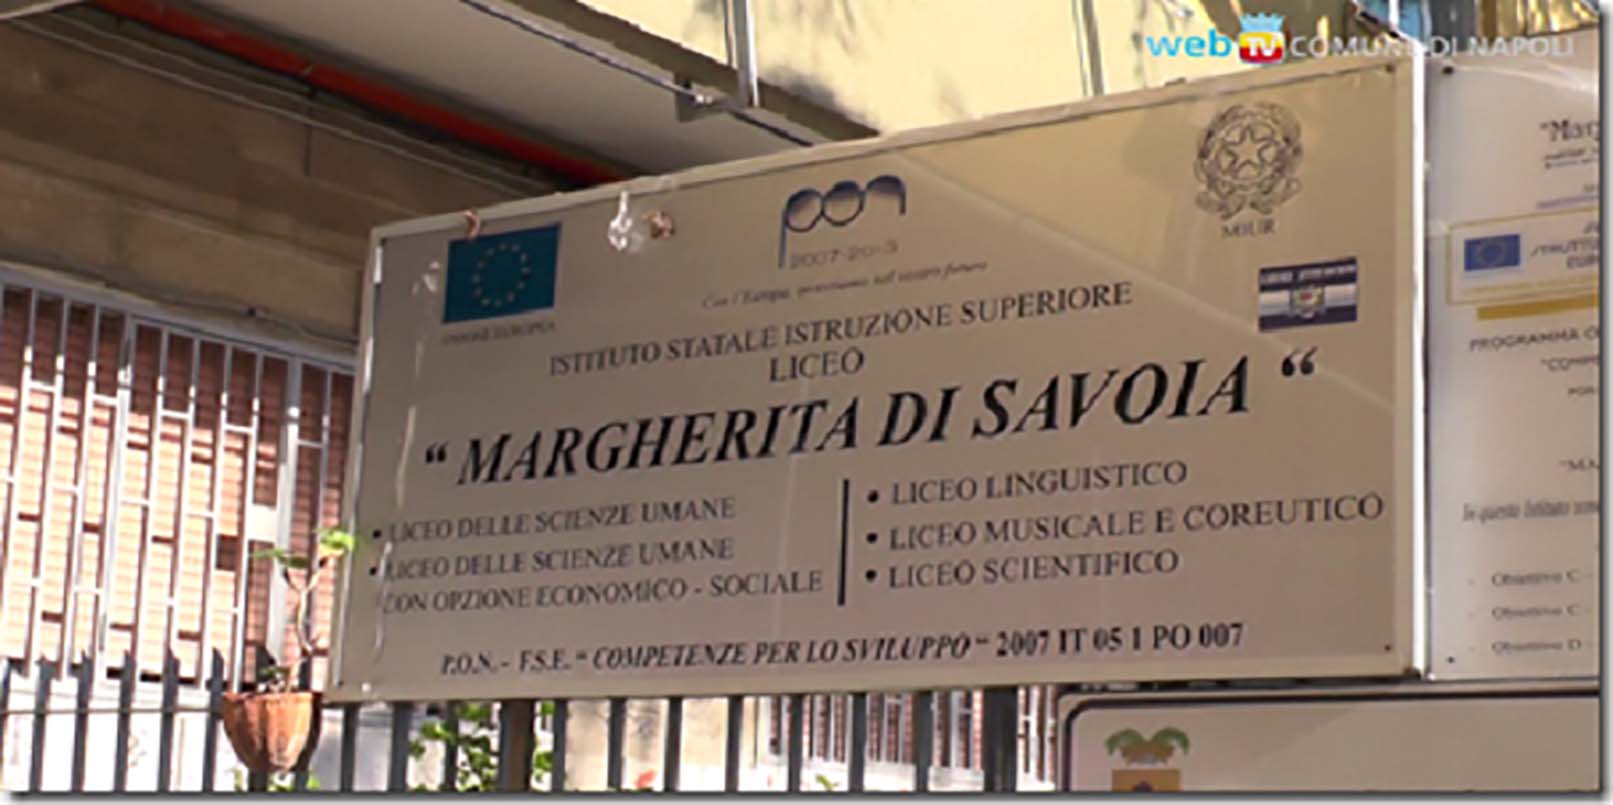 Napoli, petizione on line contro la chiusura del Liceo serale Margherita di Savoia